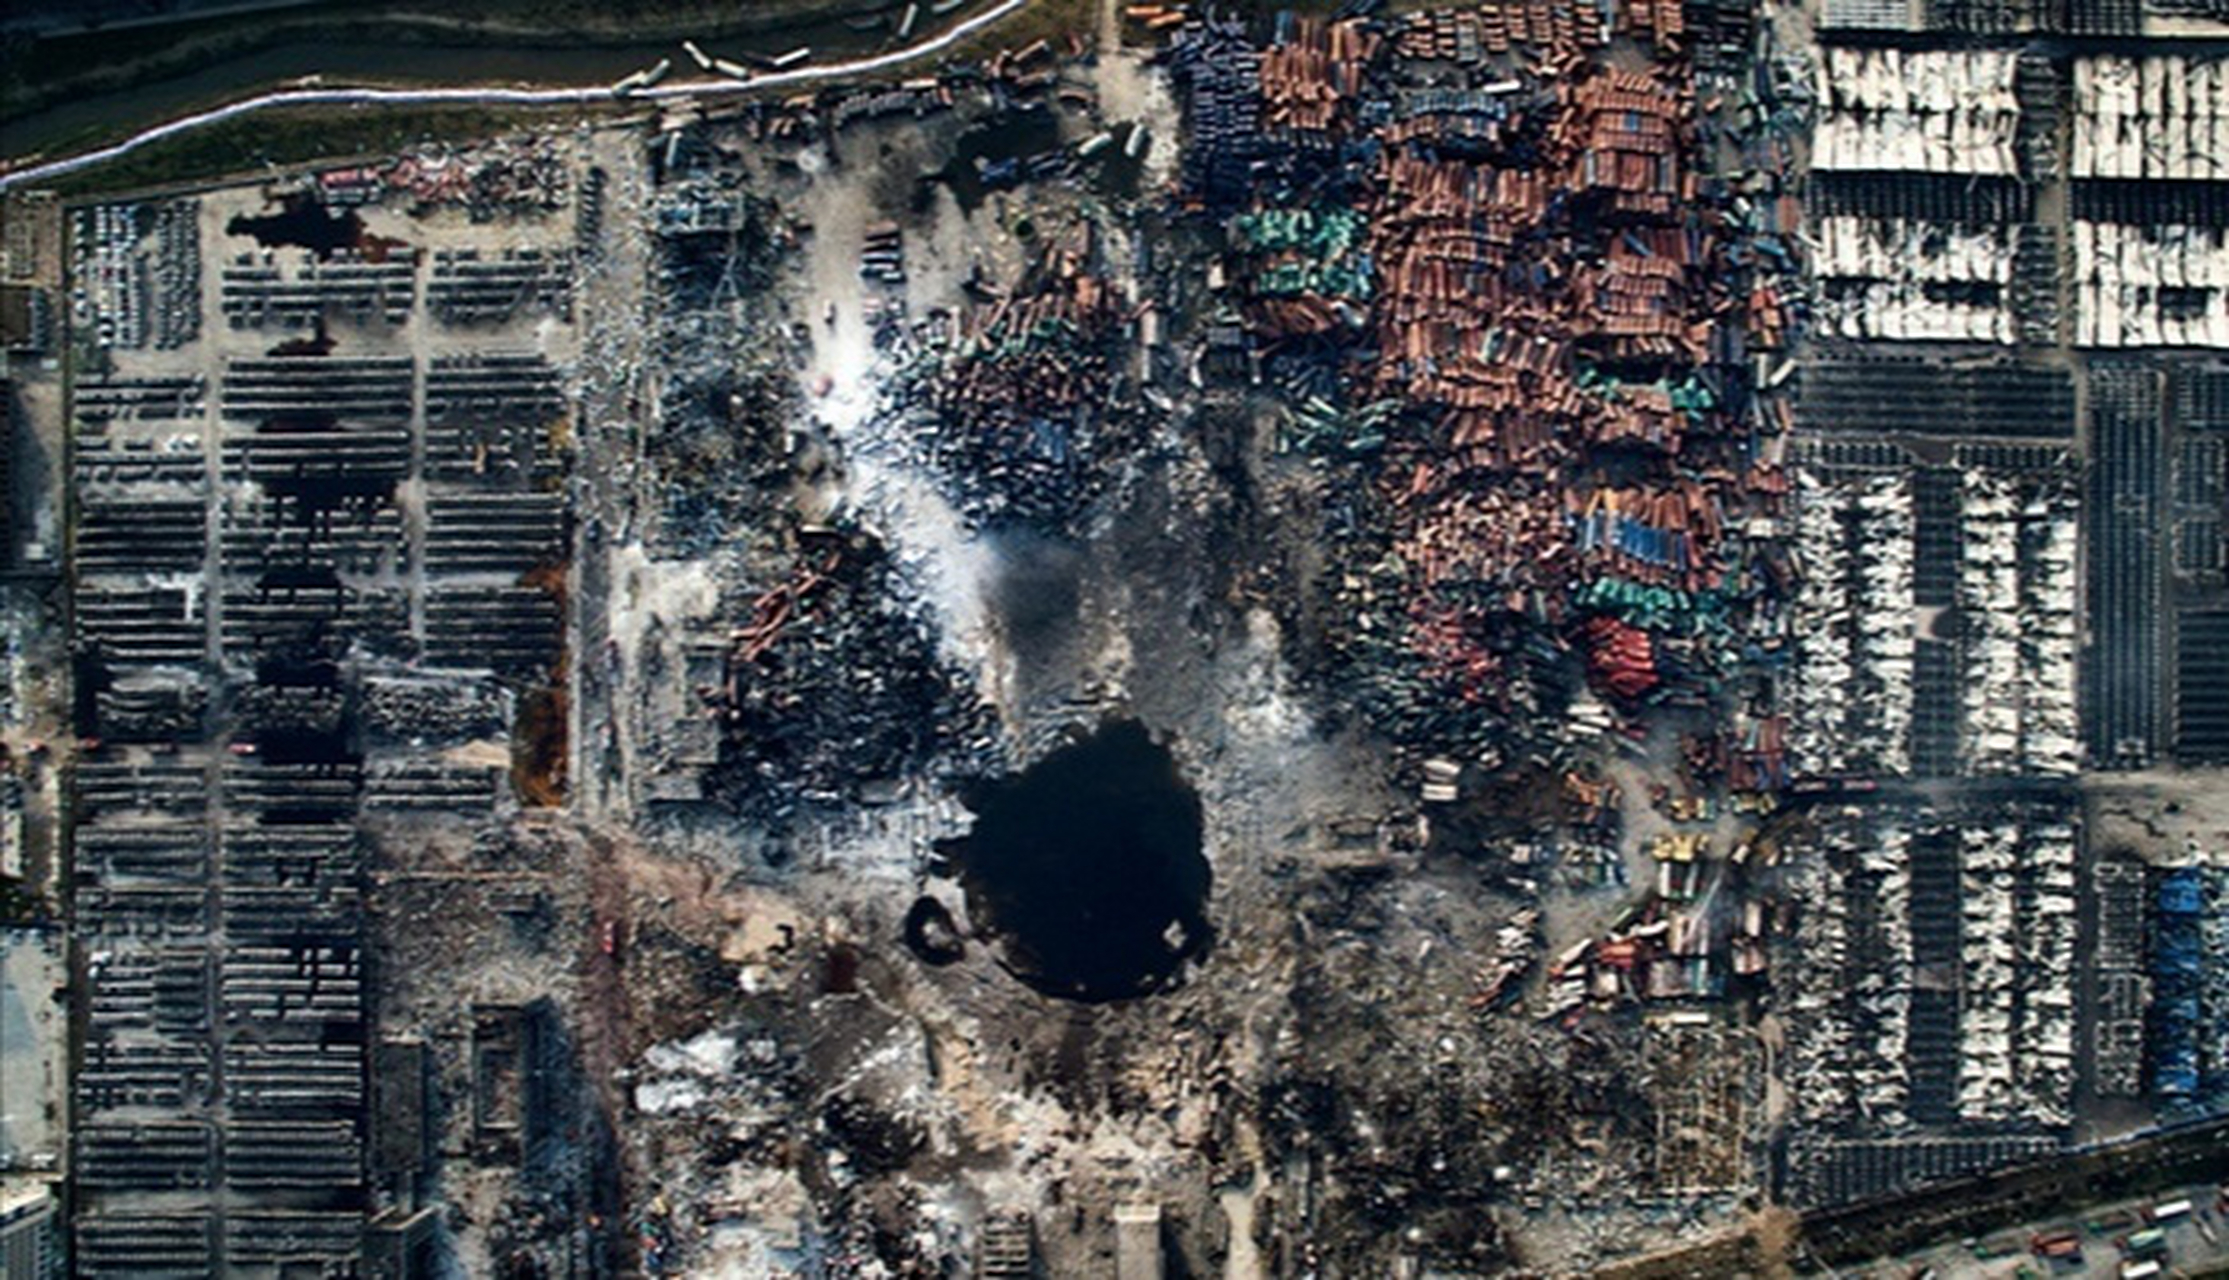 天津大爆炸被气化的人图片